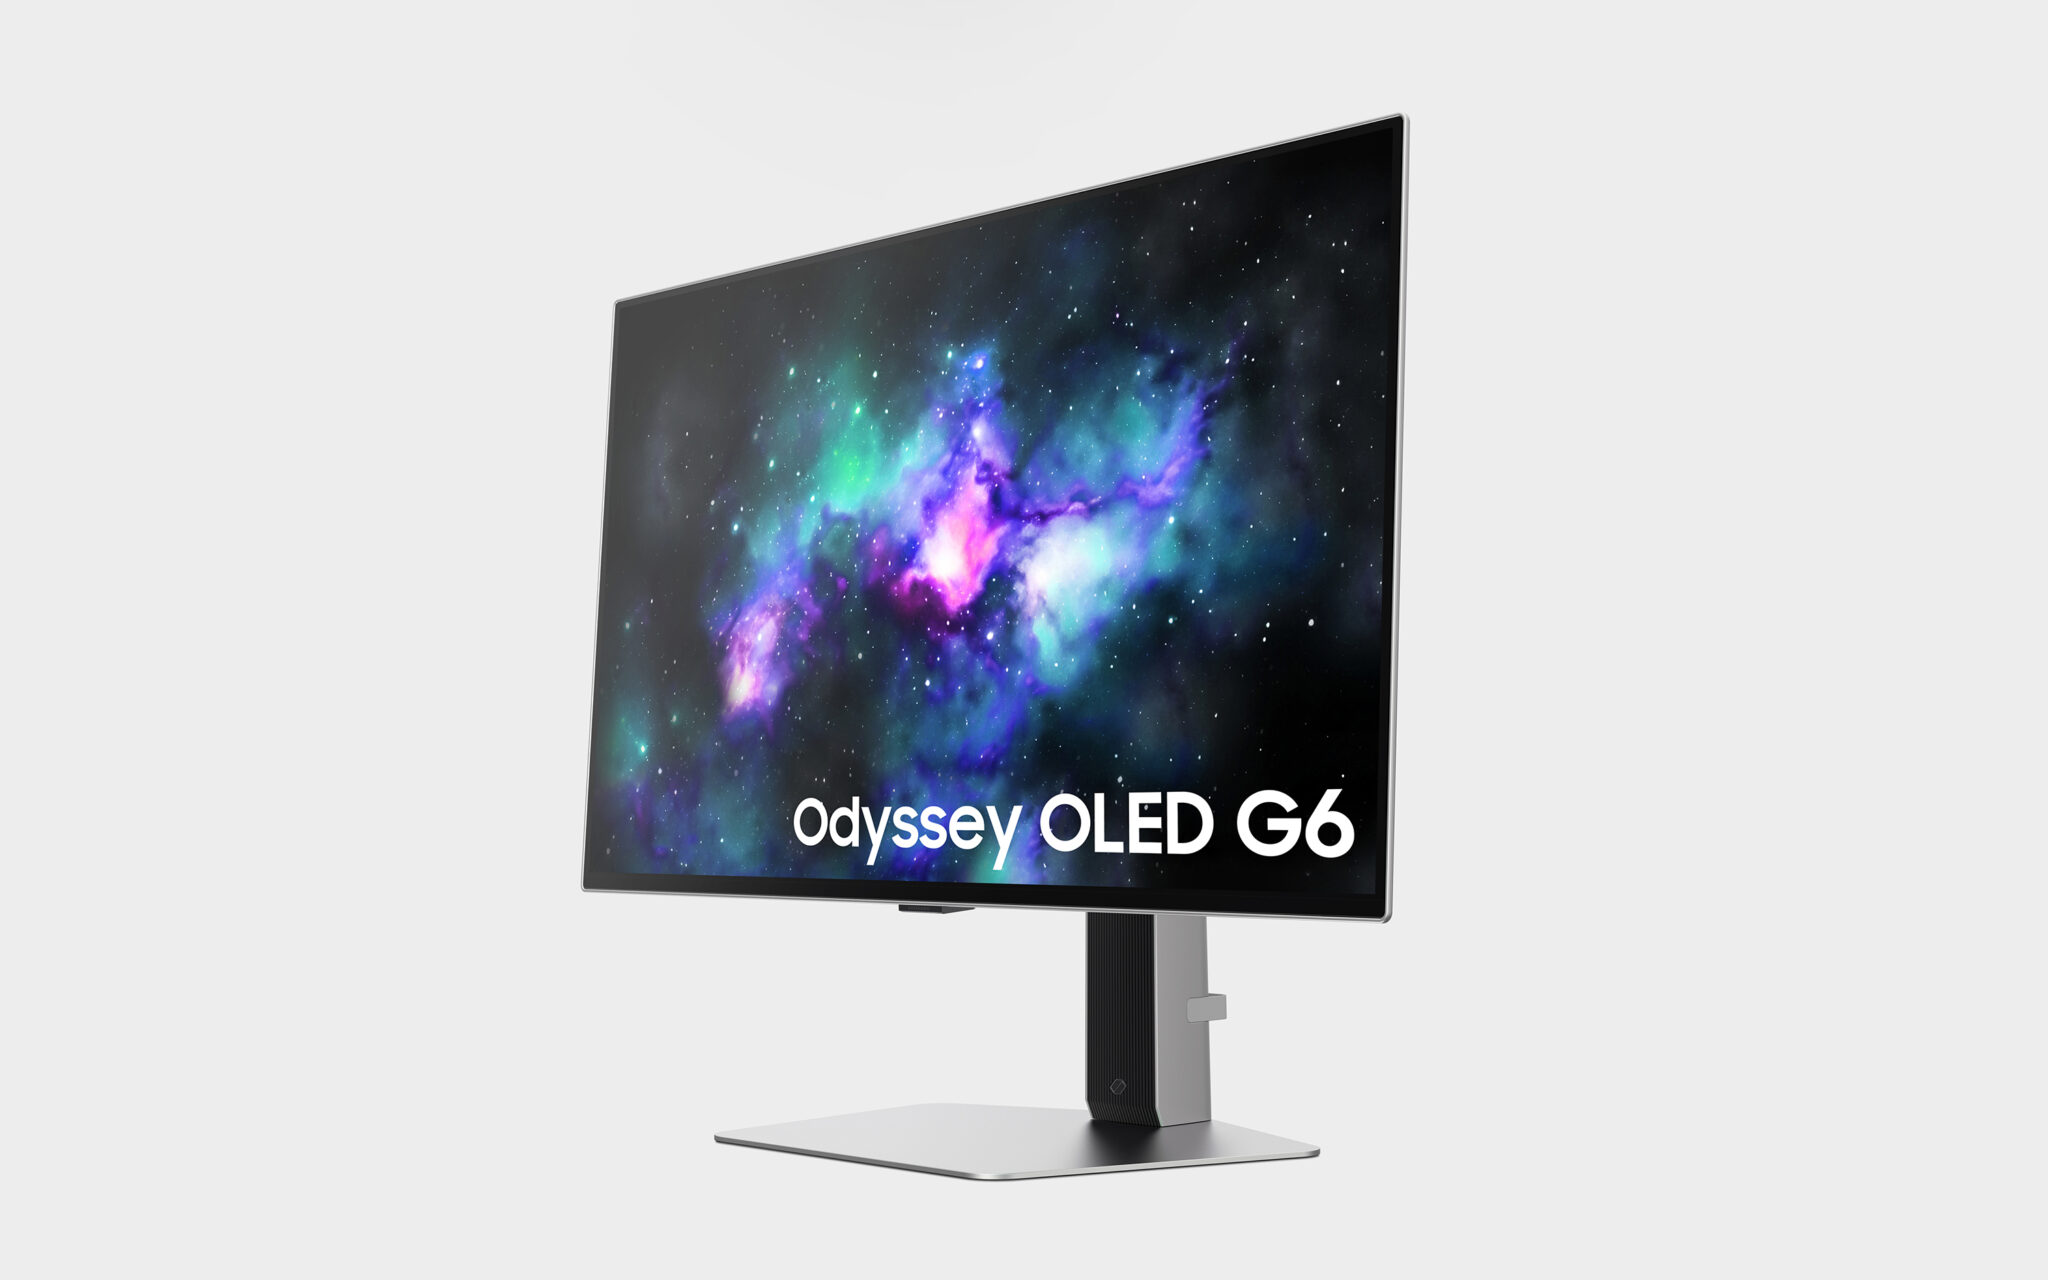 Der Odyssey OLD G6 ist der kleinste, aber der schnellste der drei neuen Monitore.